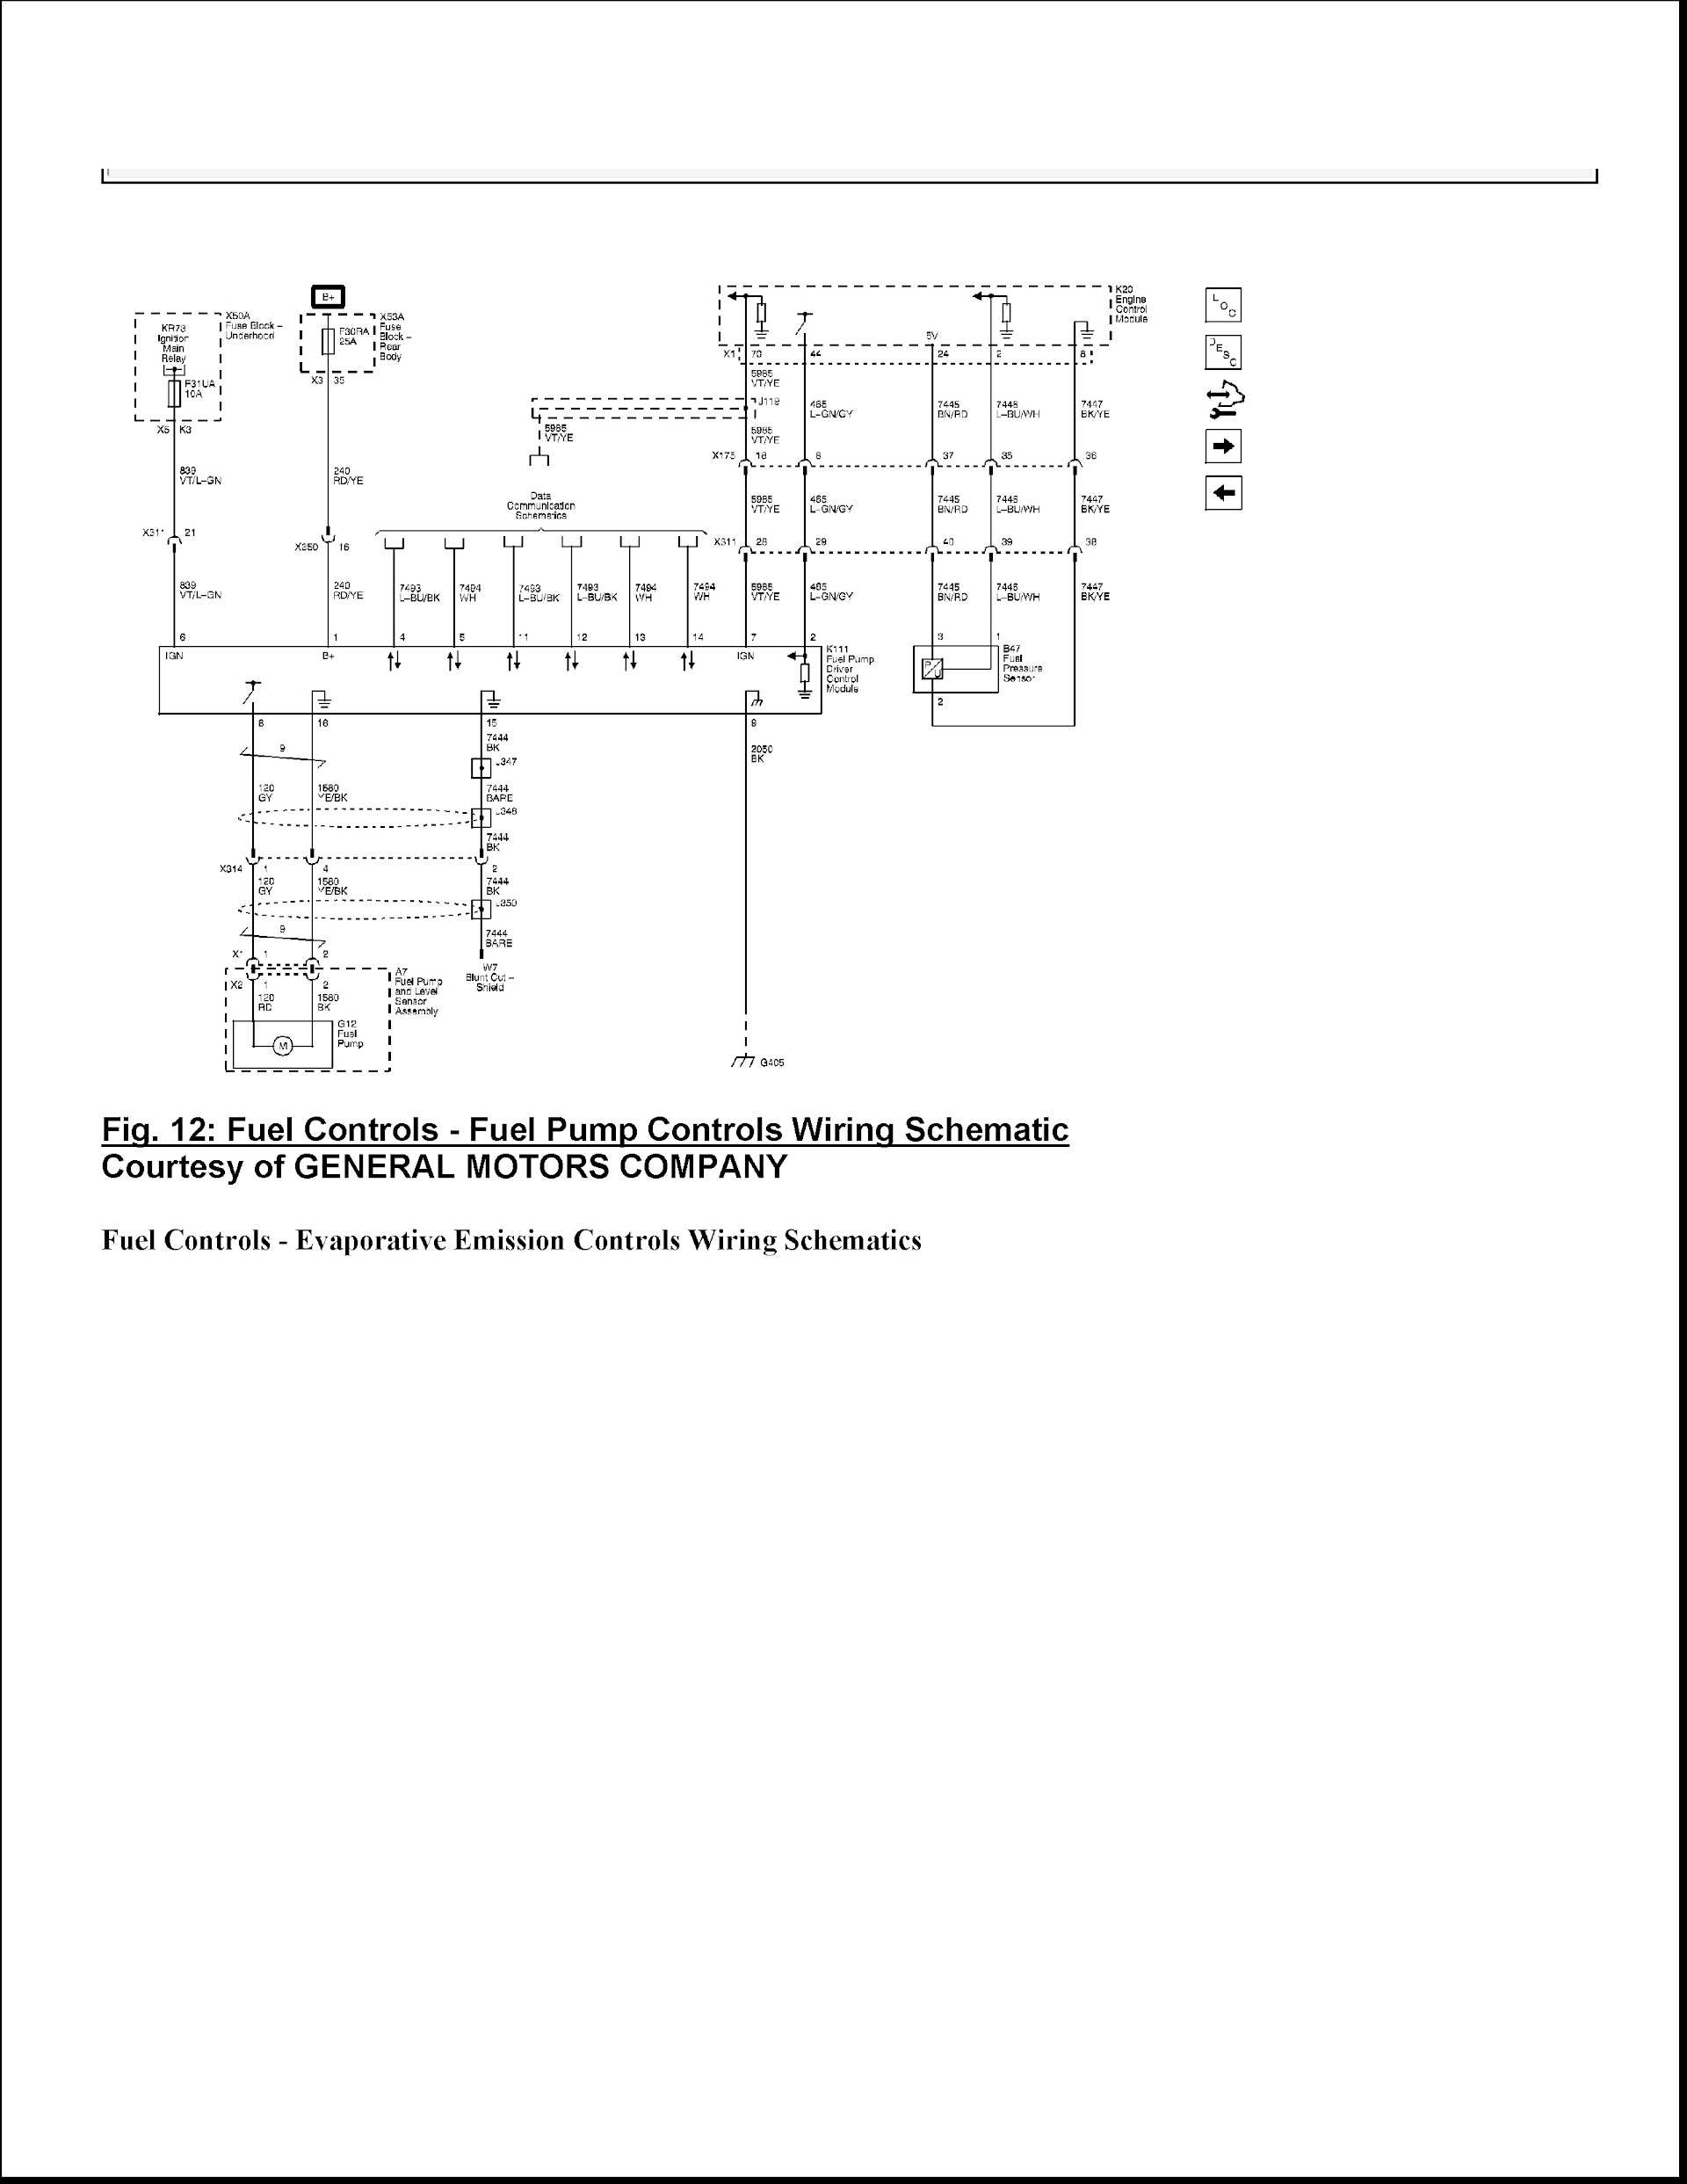 CONTENTS: 2014-2017 Chevrolet Corvette Repair Manual C7, Fuel Pump Controls Wiring Schematic